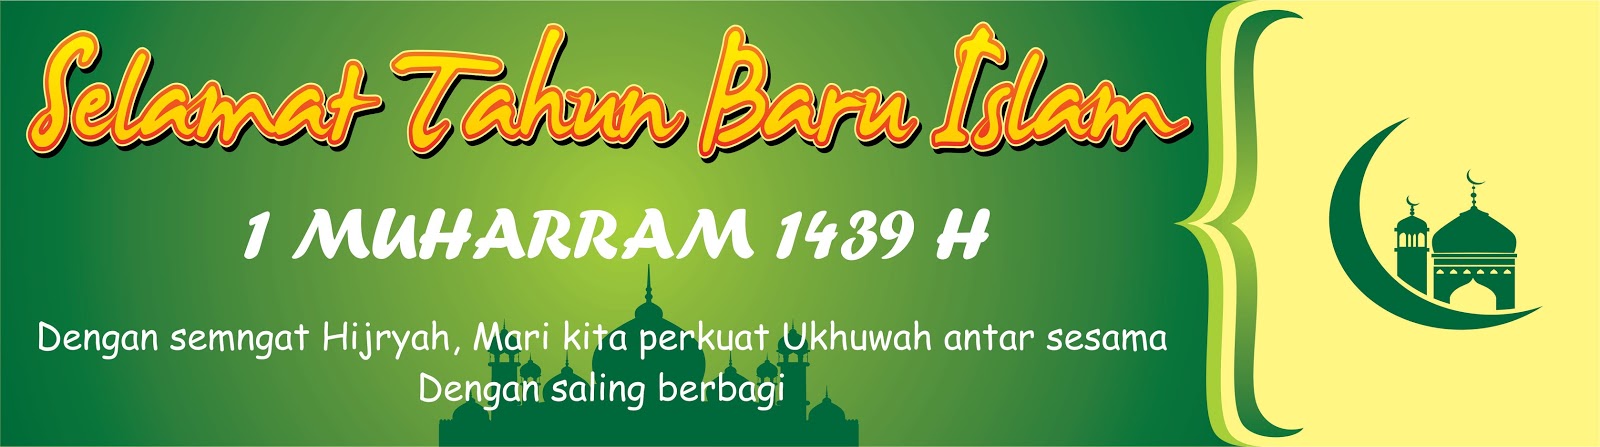 Download Contoh Spanduk Tahun Baru Islam 1439 H Format CDR 